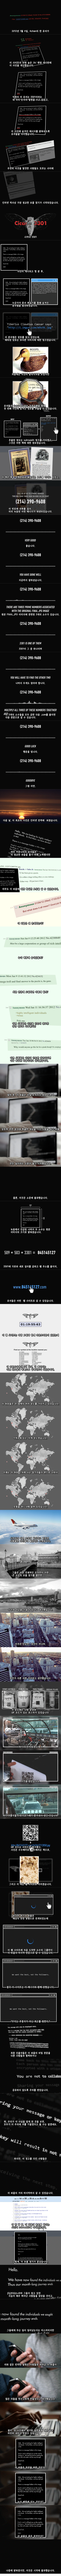 정체불명의 인터넷 퍼즐: Cicada 3301 (스압)